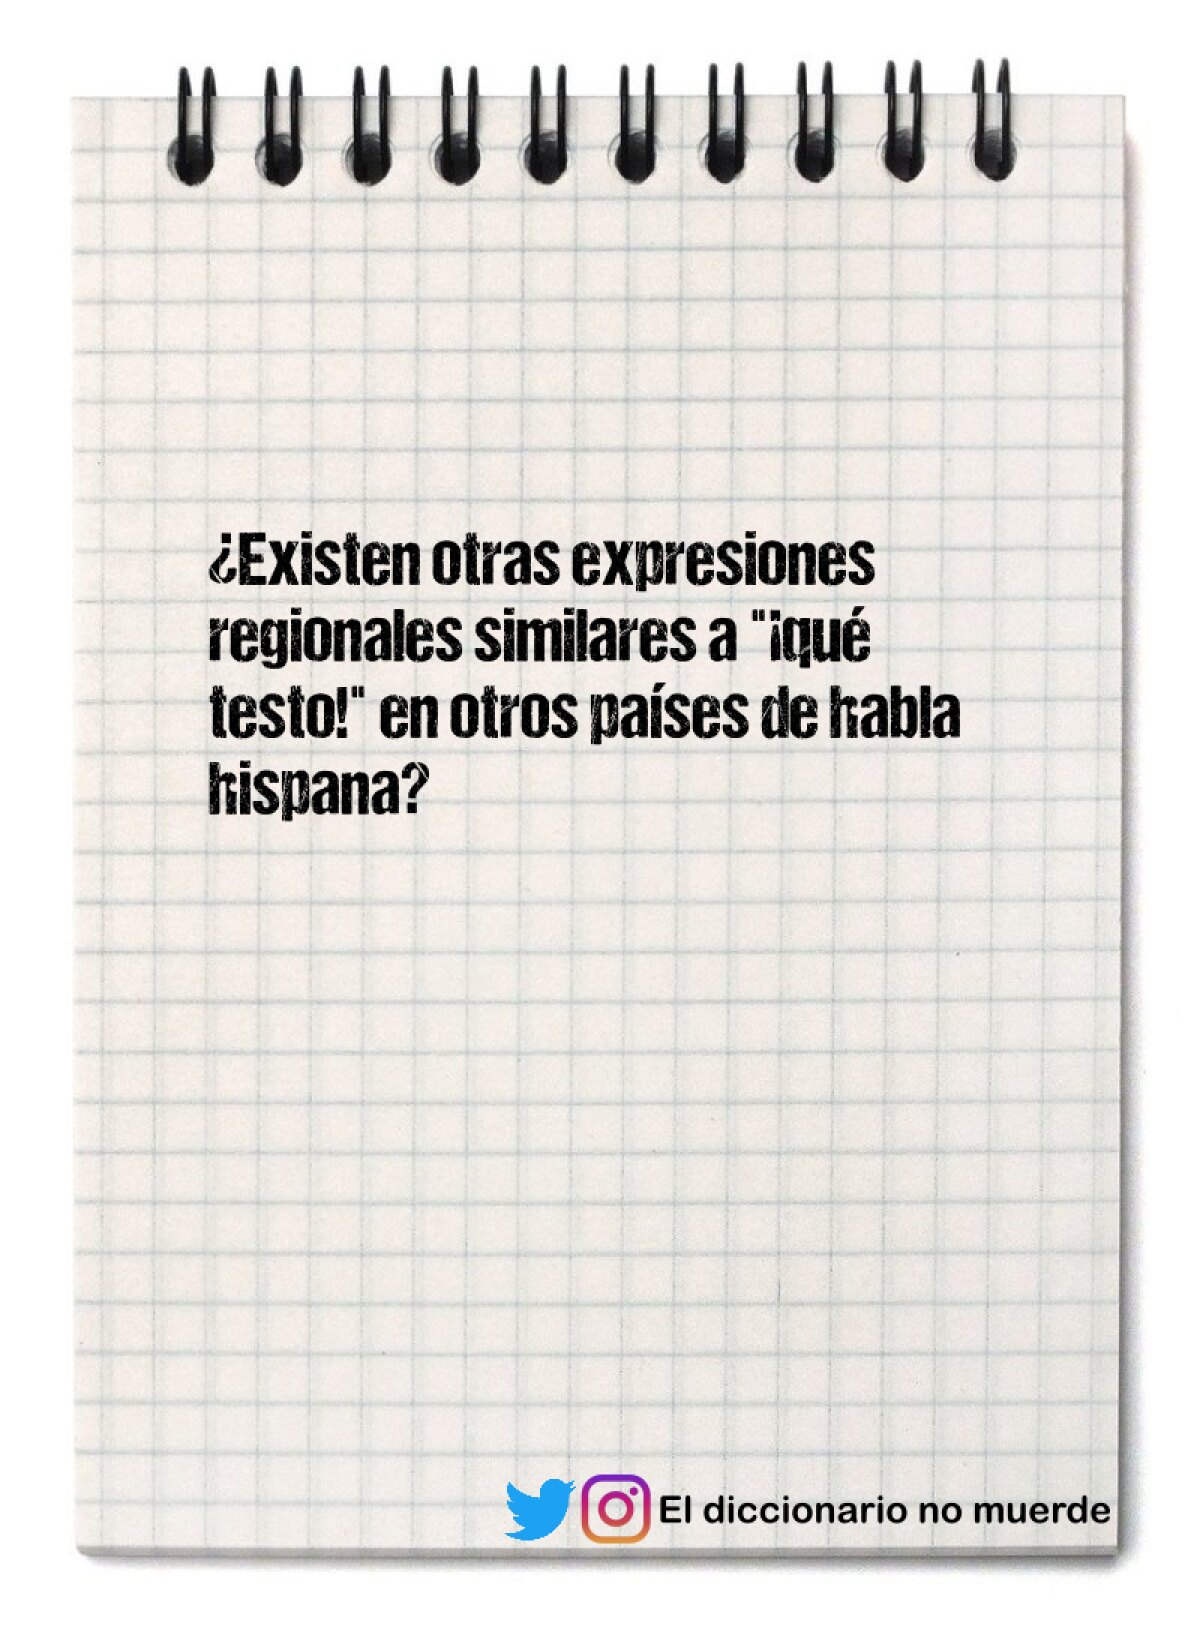 ¿Existen otras expresiones regionales similares a "¡qué testo!" en otros países de habla hispana?